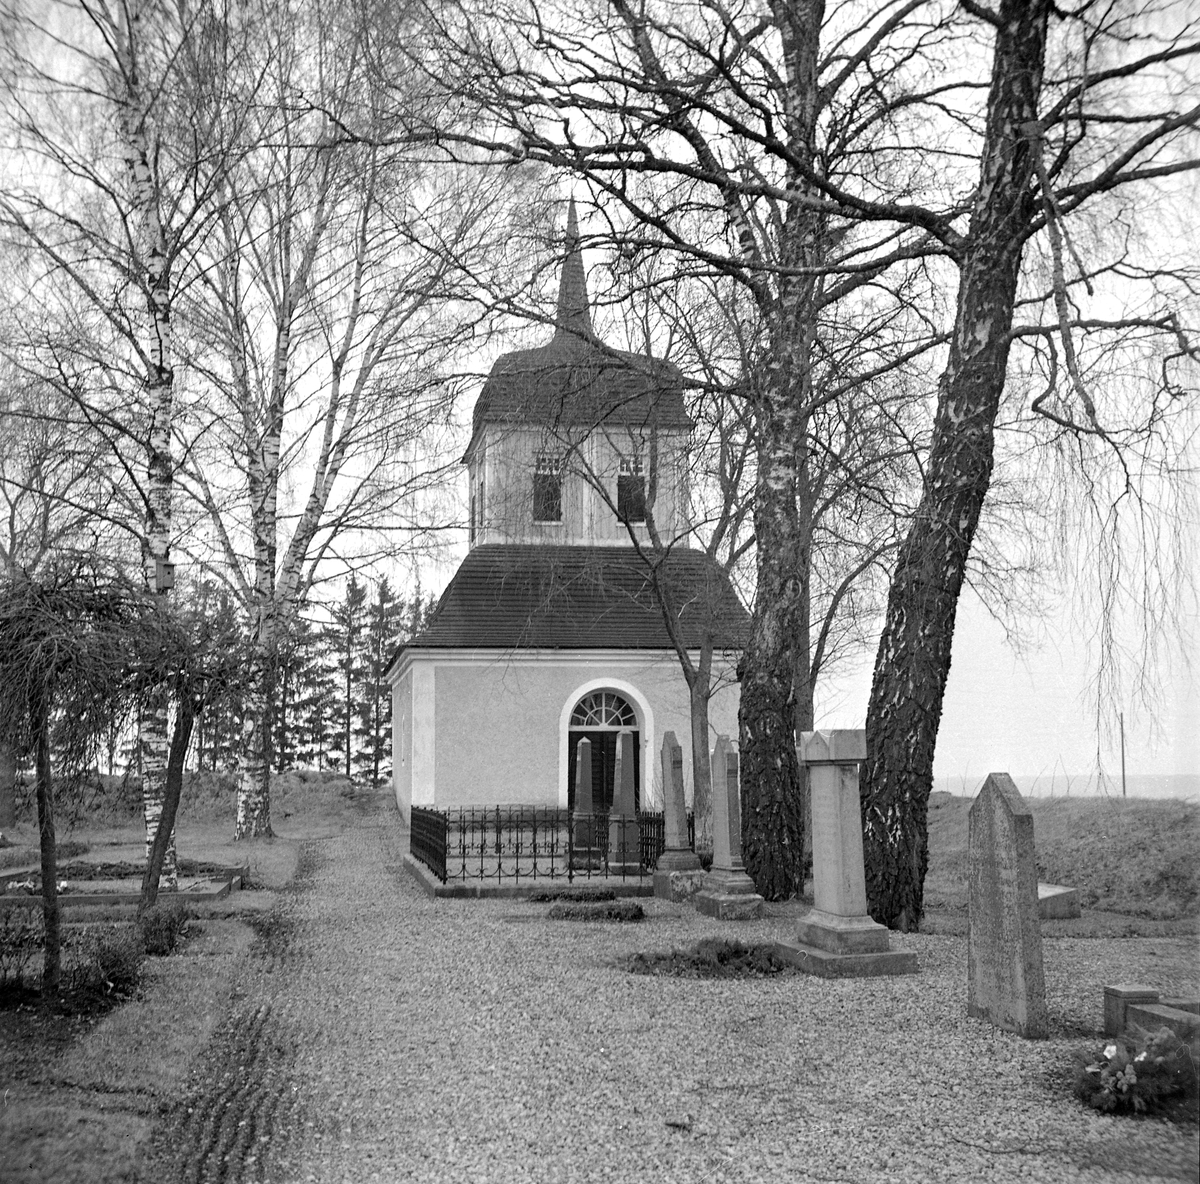 "Gravkapellet" på Skeppsås kyrogård bär på en oklar byggnadshistoria. Möjligtvis uppfördes byggnaden redan under medeltiden som tiondebod. Klart står att den år 1781 apterades till sockenmagasin för spannmål och att den kvarstod som magasinsbyggnad de följande 100 åren. Sedan år 1912 är två kyrkklockor placerade i byggnadens övre del som sedan dess fungerat som klockbod. Här dokumenterad av Östergötlands museum 1949.